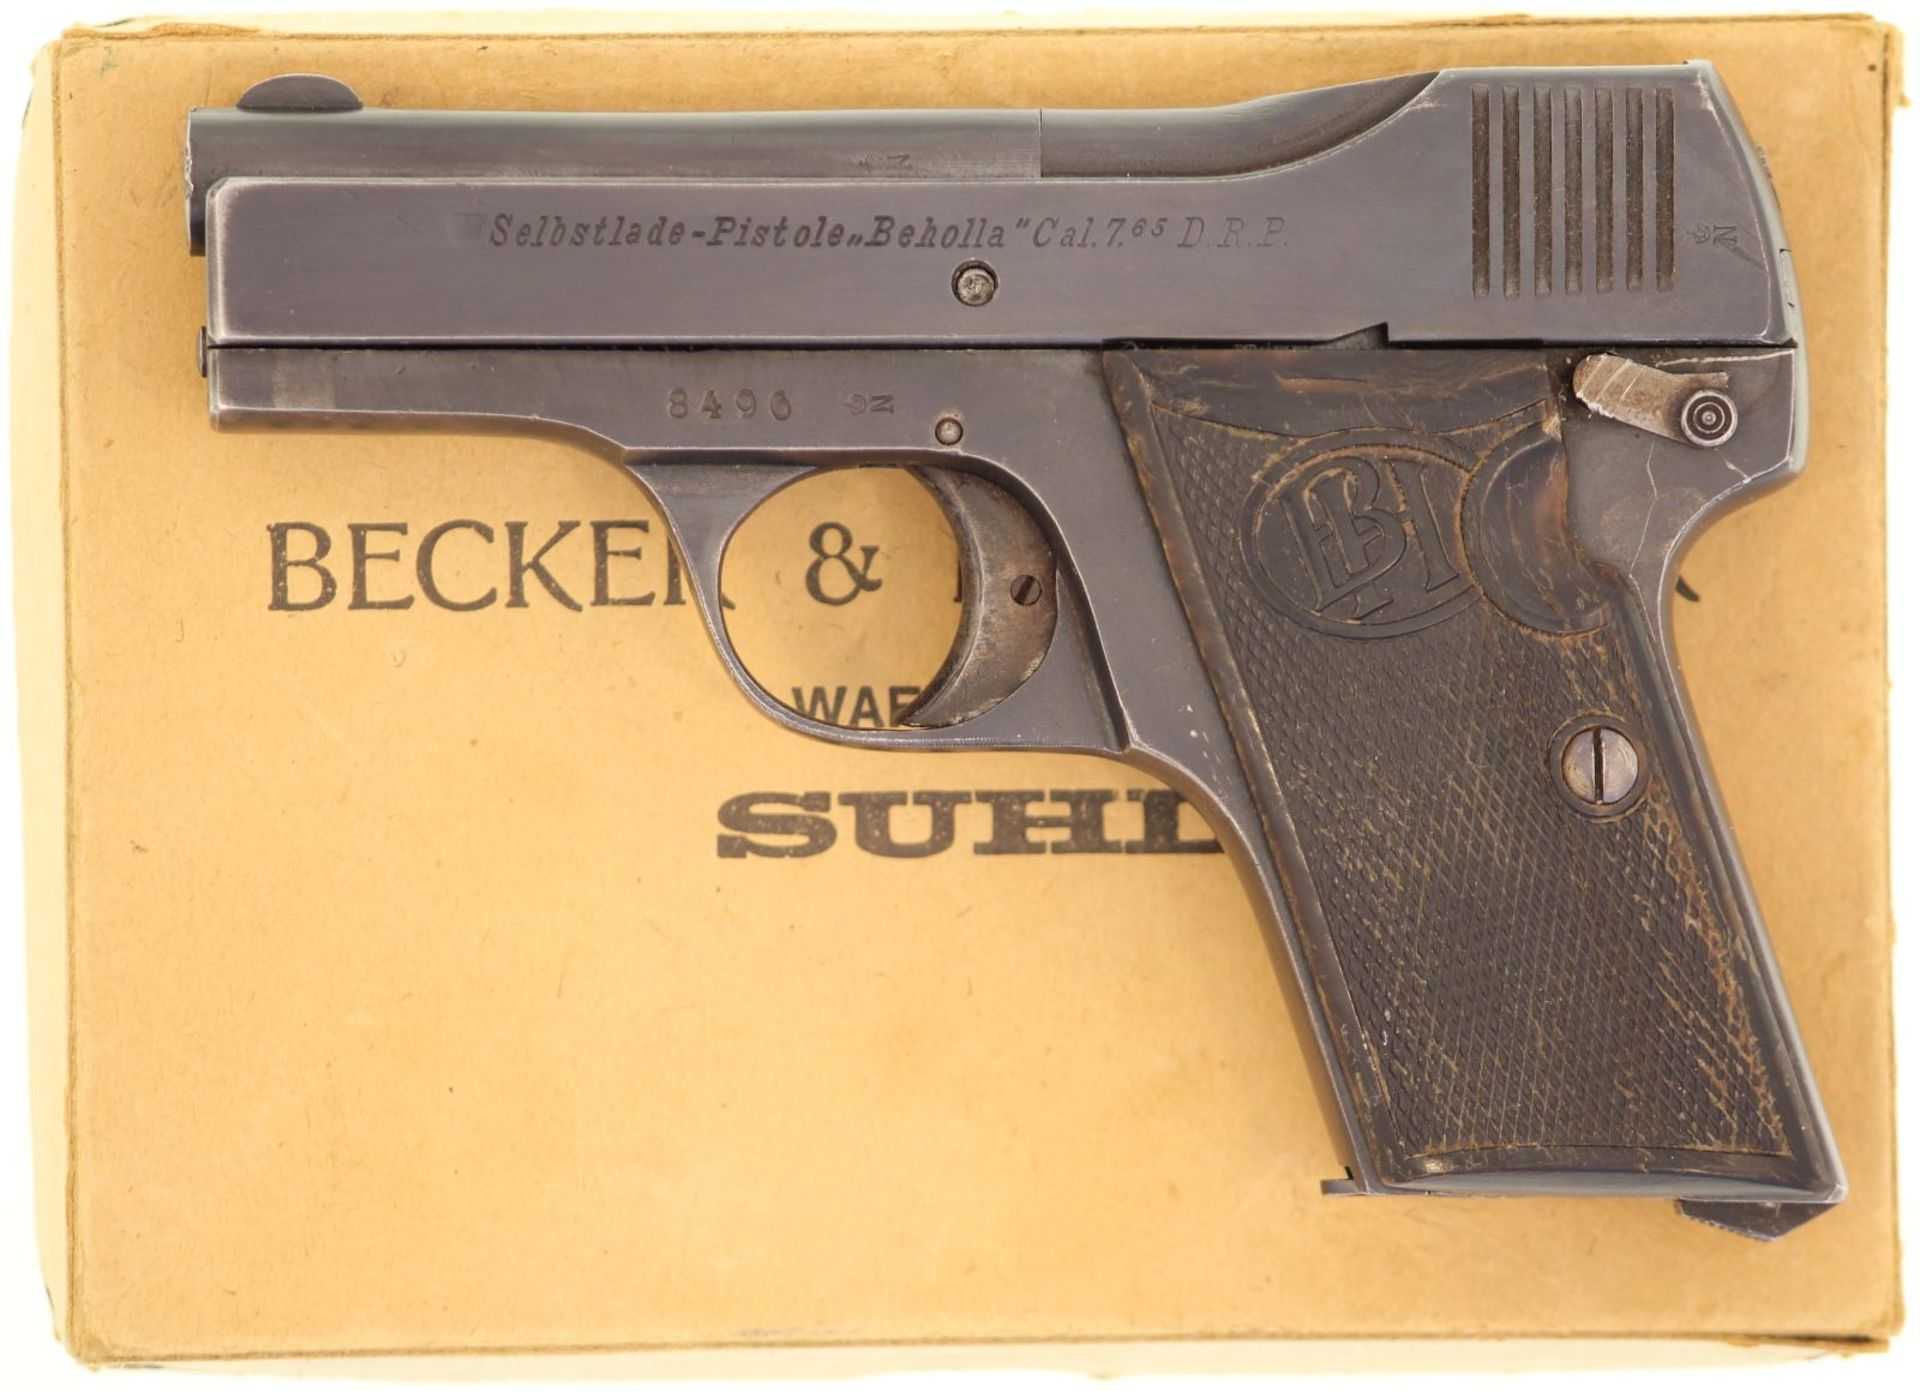 Selbstladepistole Beholla Kal. 7.65mm. Streichbrünierte neuwertige Waffe, braune gepresste